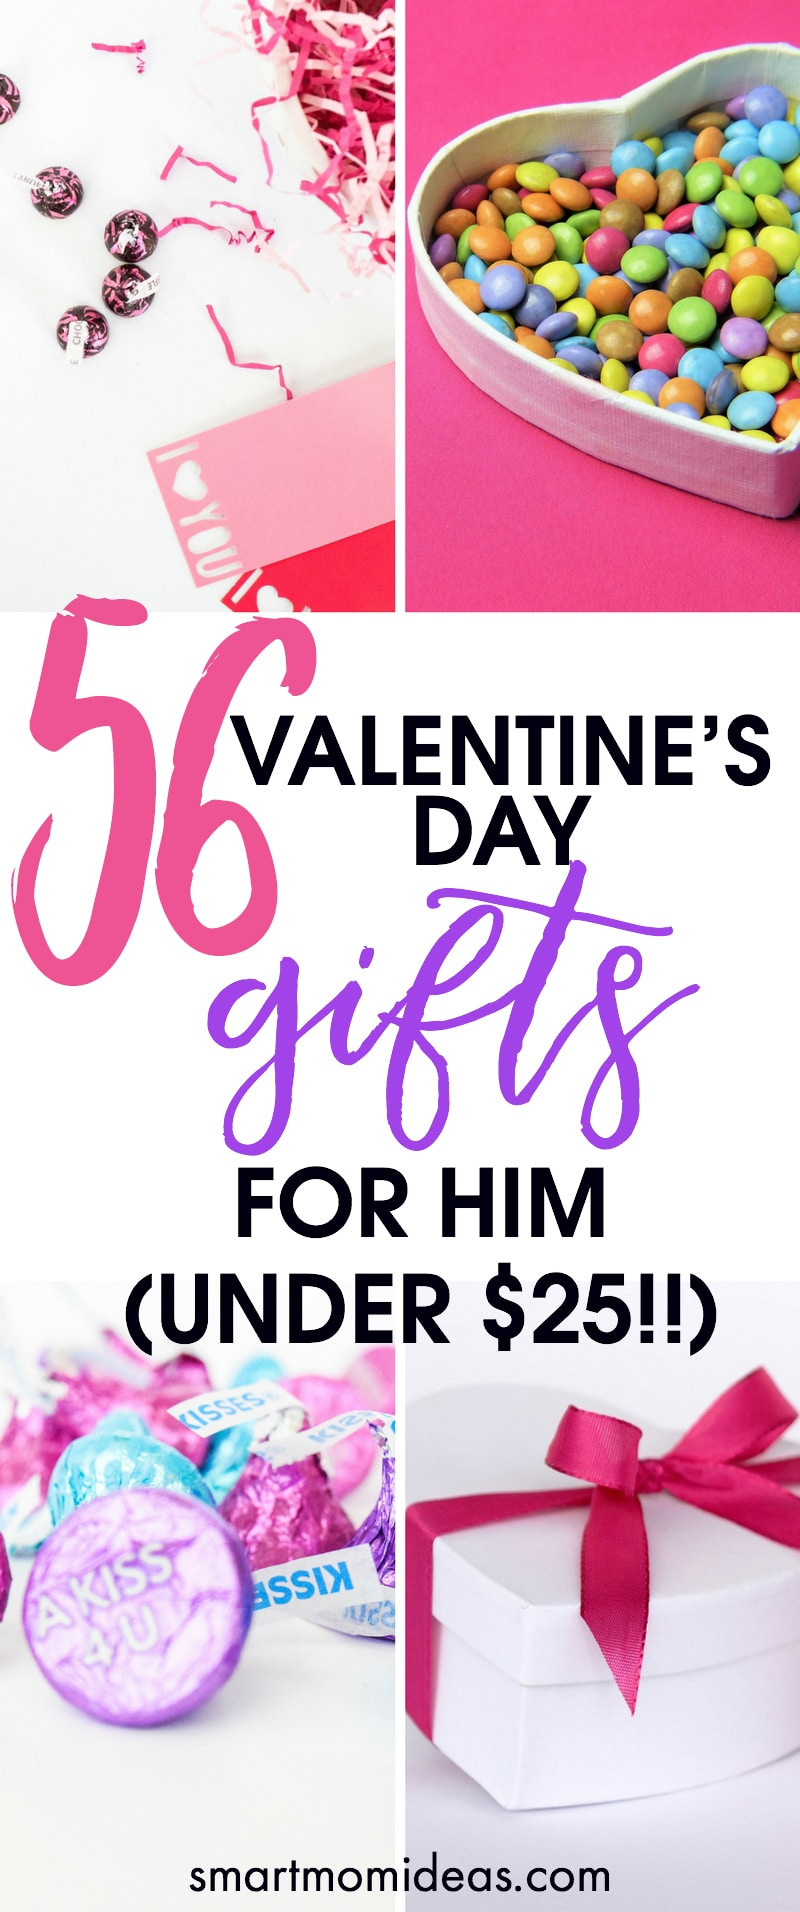 Valentine Day Gift Ideas Him
 56 Valentine’s Day Gifts for Him Under $25